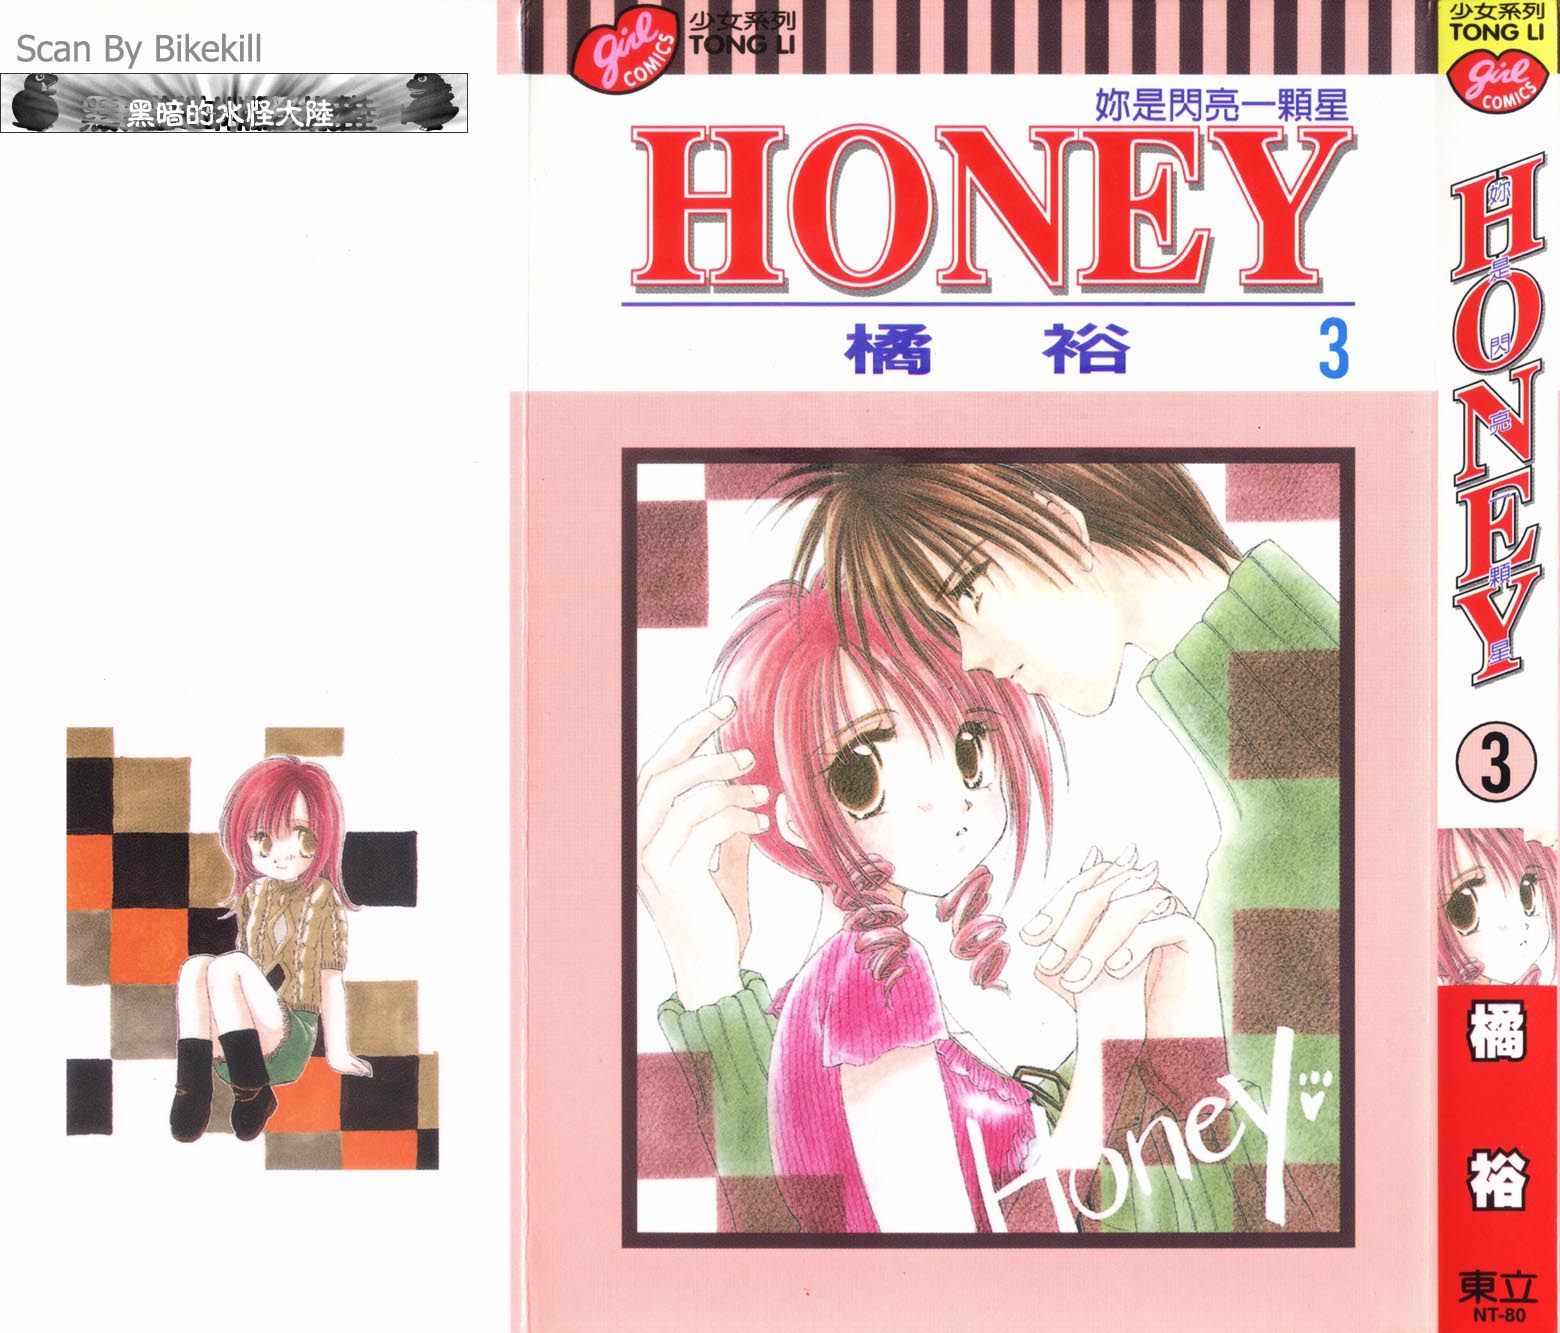 Honey你是閃亮一顆星漫畫honey03卷 第1頁 Honey你是閃亮一顆星honey03卷 Honey你是閃亮一顆星honey03卷劇情 看漫畫 手機版